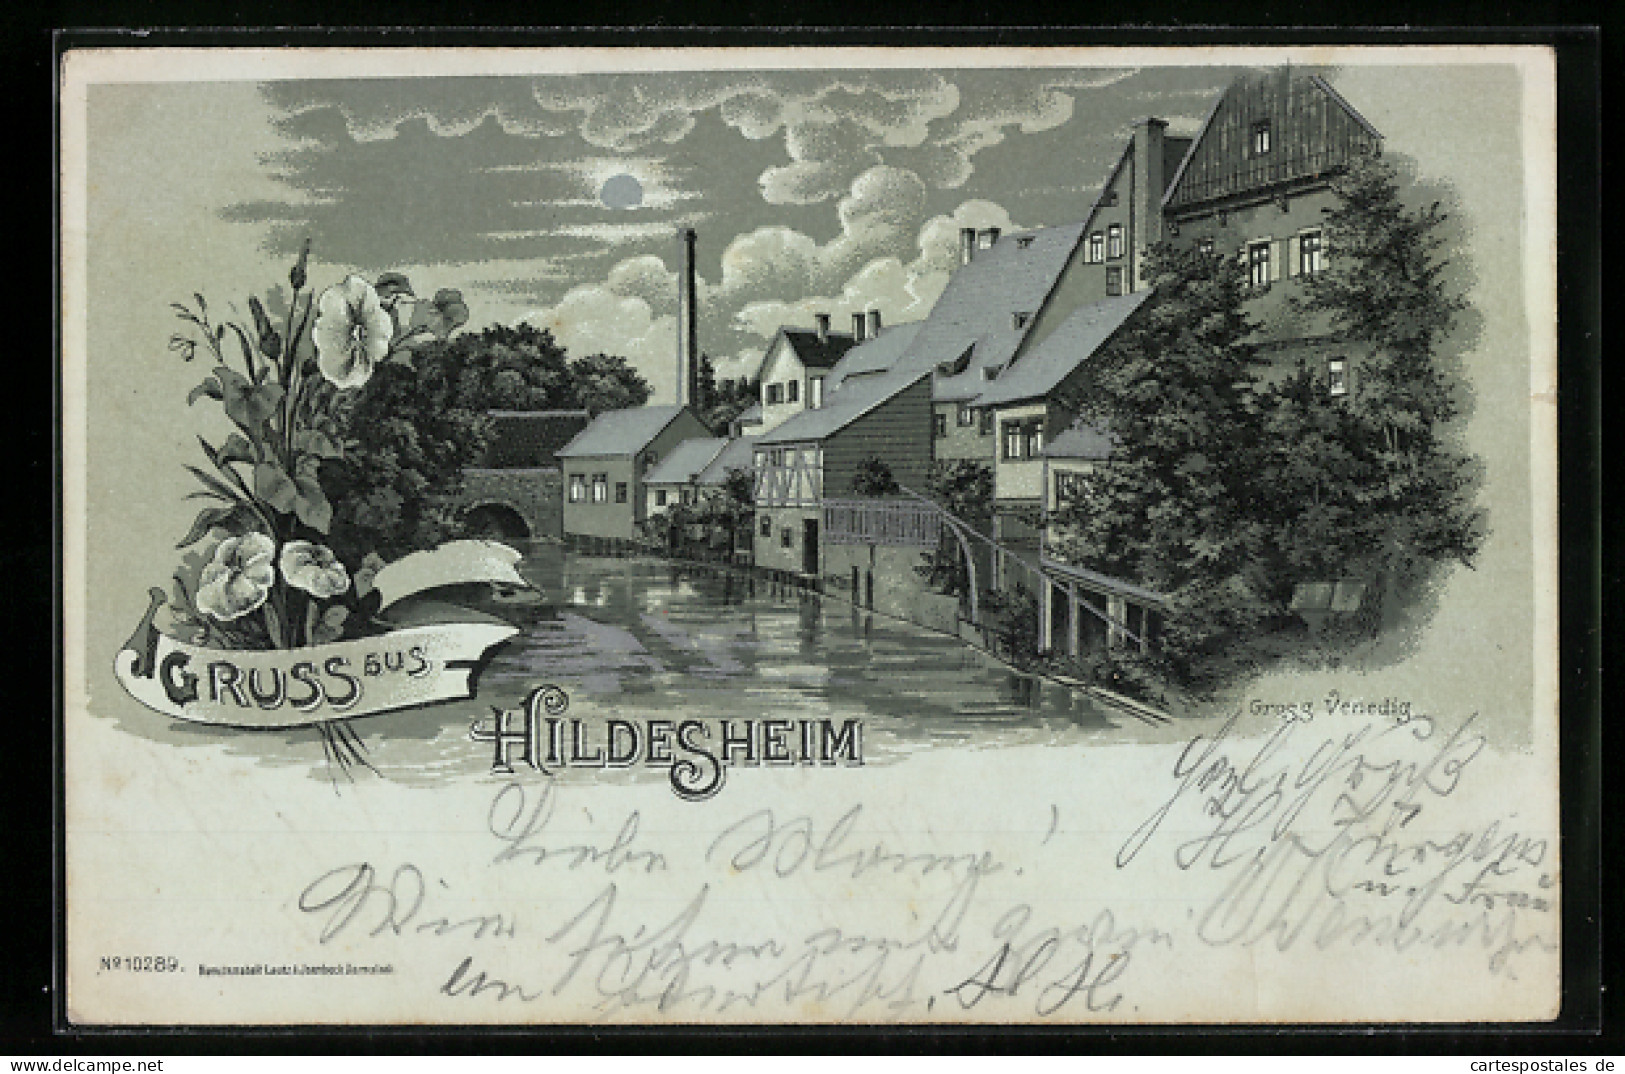 Mondschein-Lithographie Hildesheim, Partie In Gross Venedig  - Hildesheim